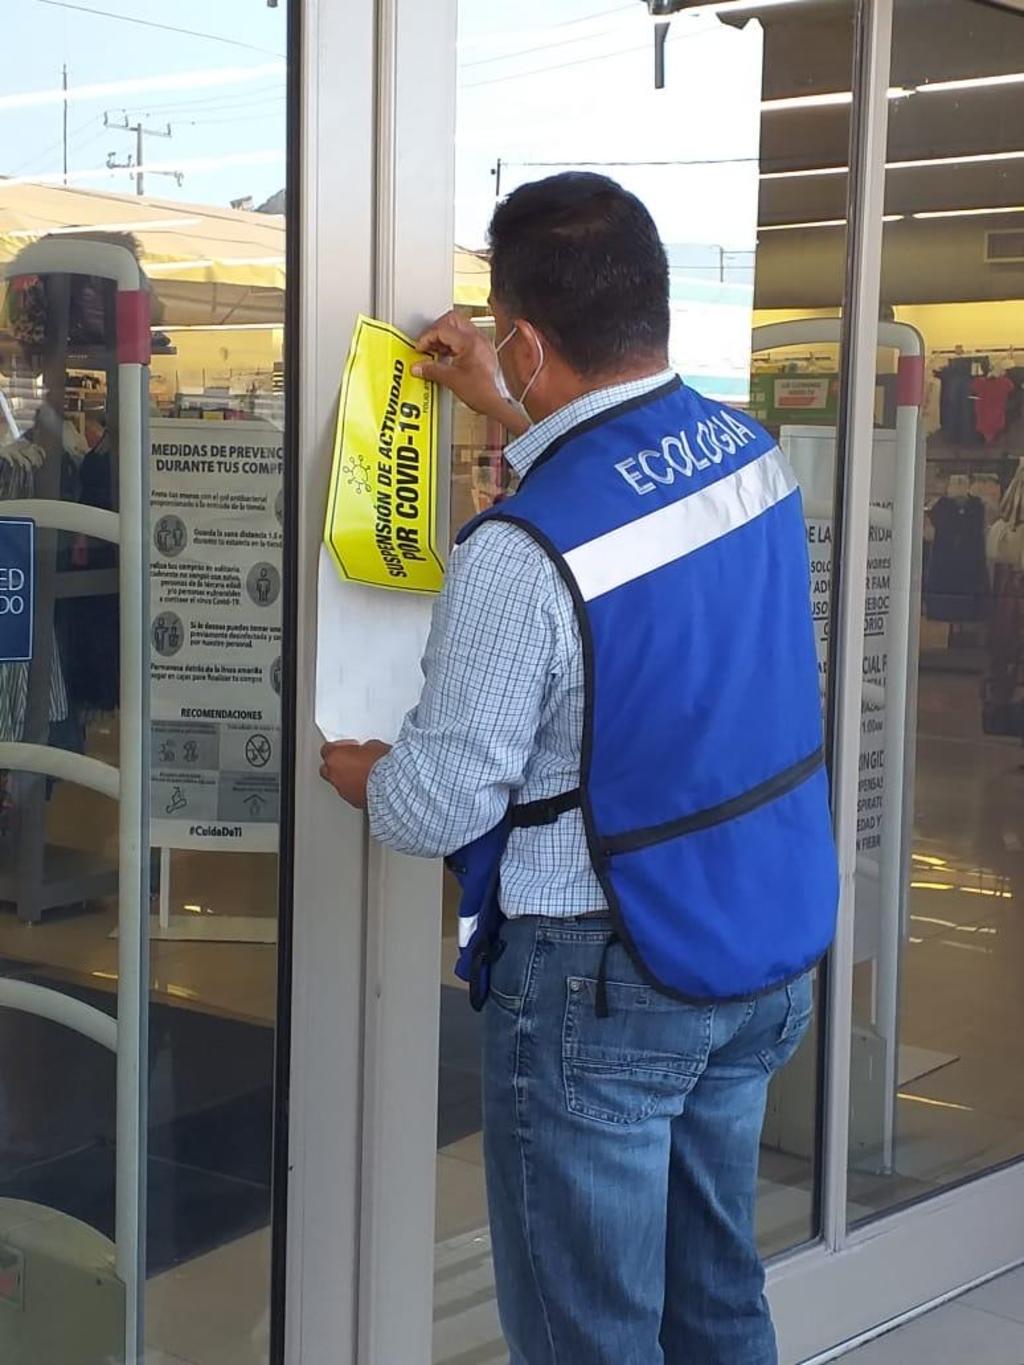 La tienda departamental Del Sol fue clausurada por el Ayuntamiento, que le aplicó además una multa por reincidir en desacatar las medidas sanitarias de prevención contra el COVID-19.